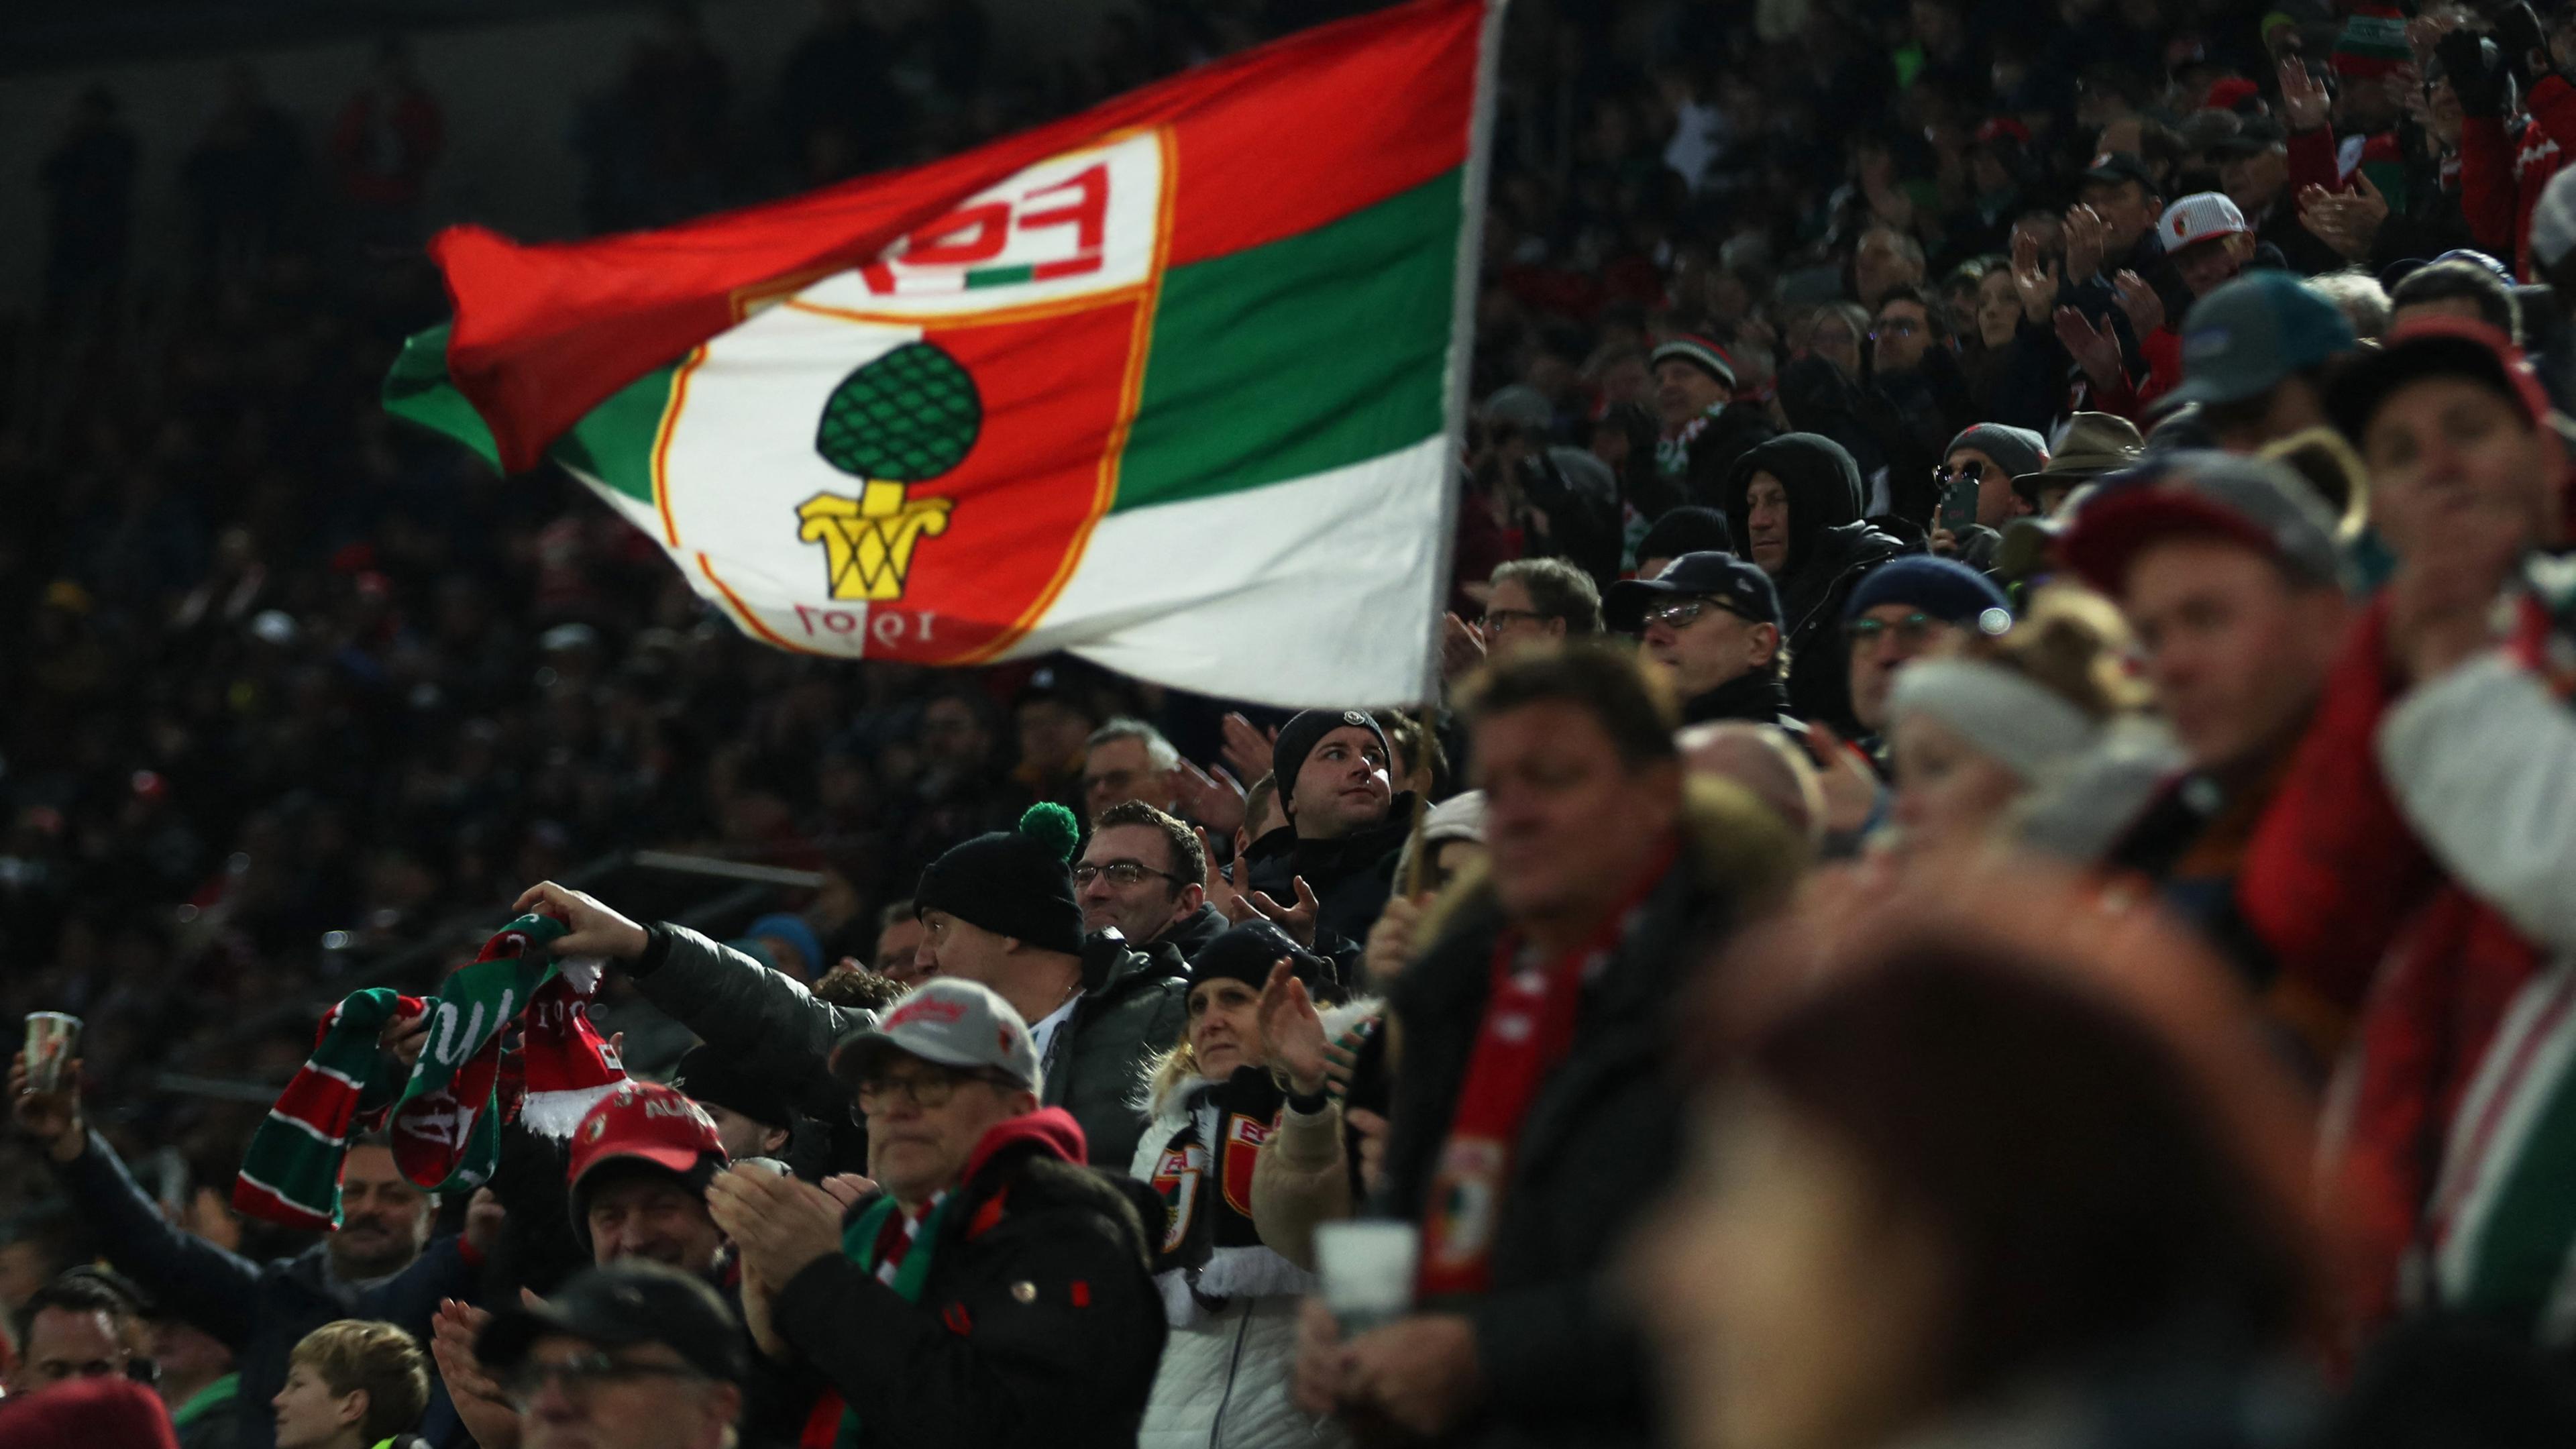 Es sind FC Augsburg Fans zu sehen, wie sie eine Flagge mit dem Vereinslogo hochhalten.